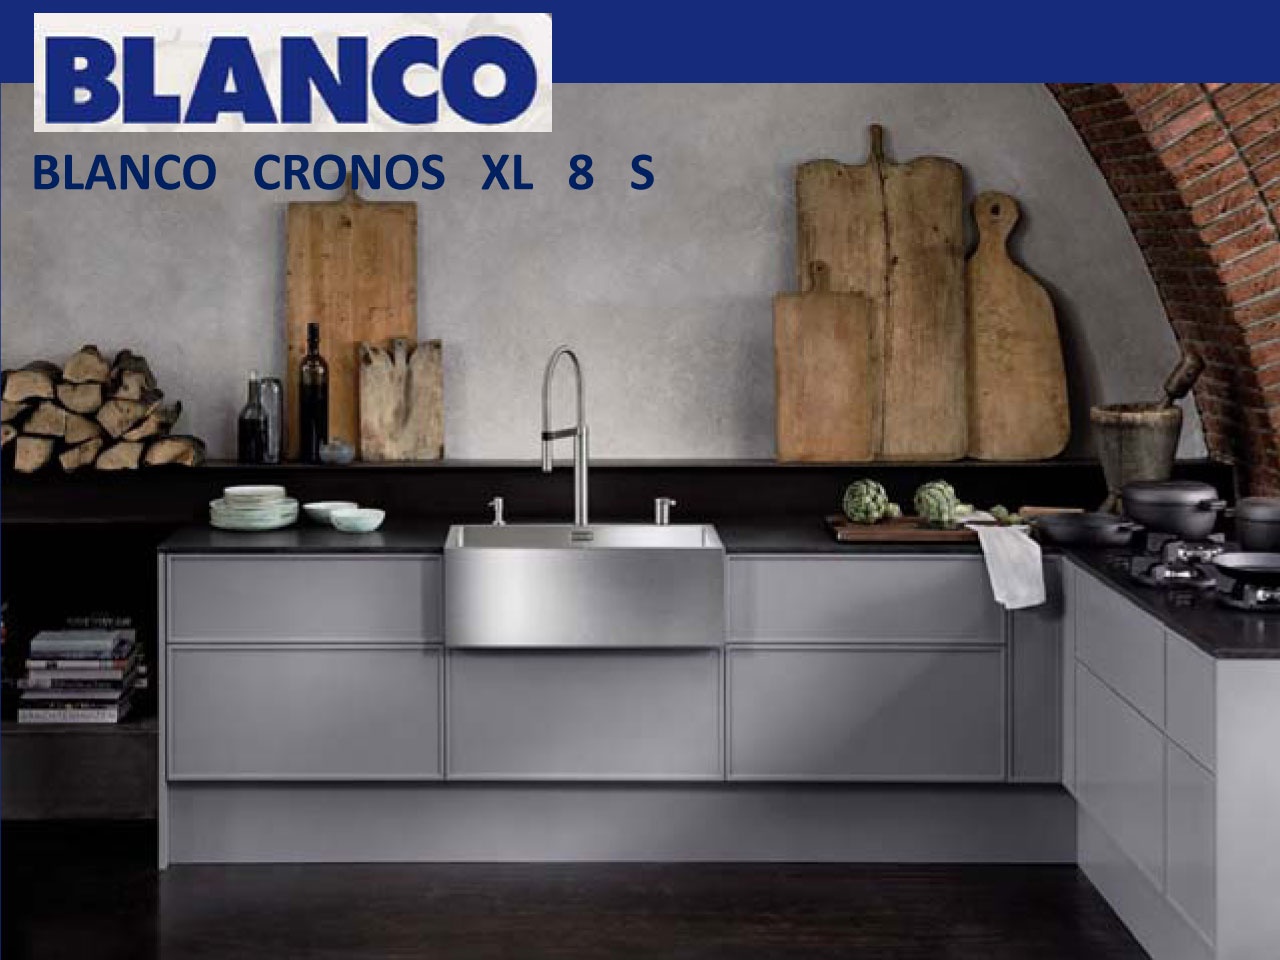 BLANCO présente CRONOS XL 8 S en acier inoxydable